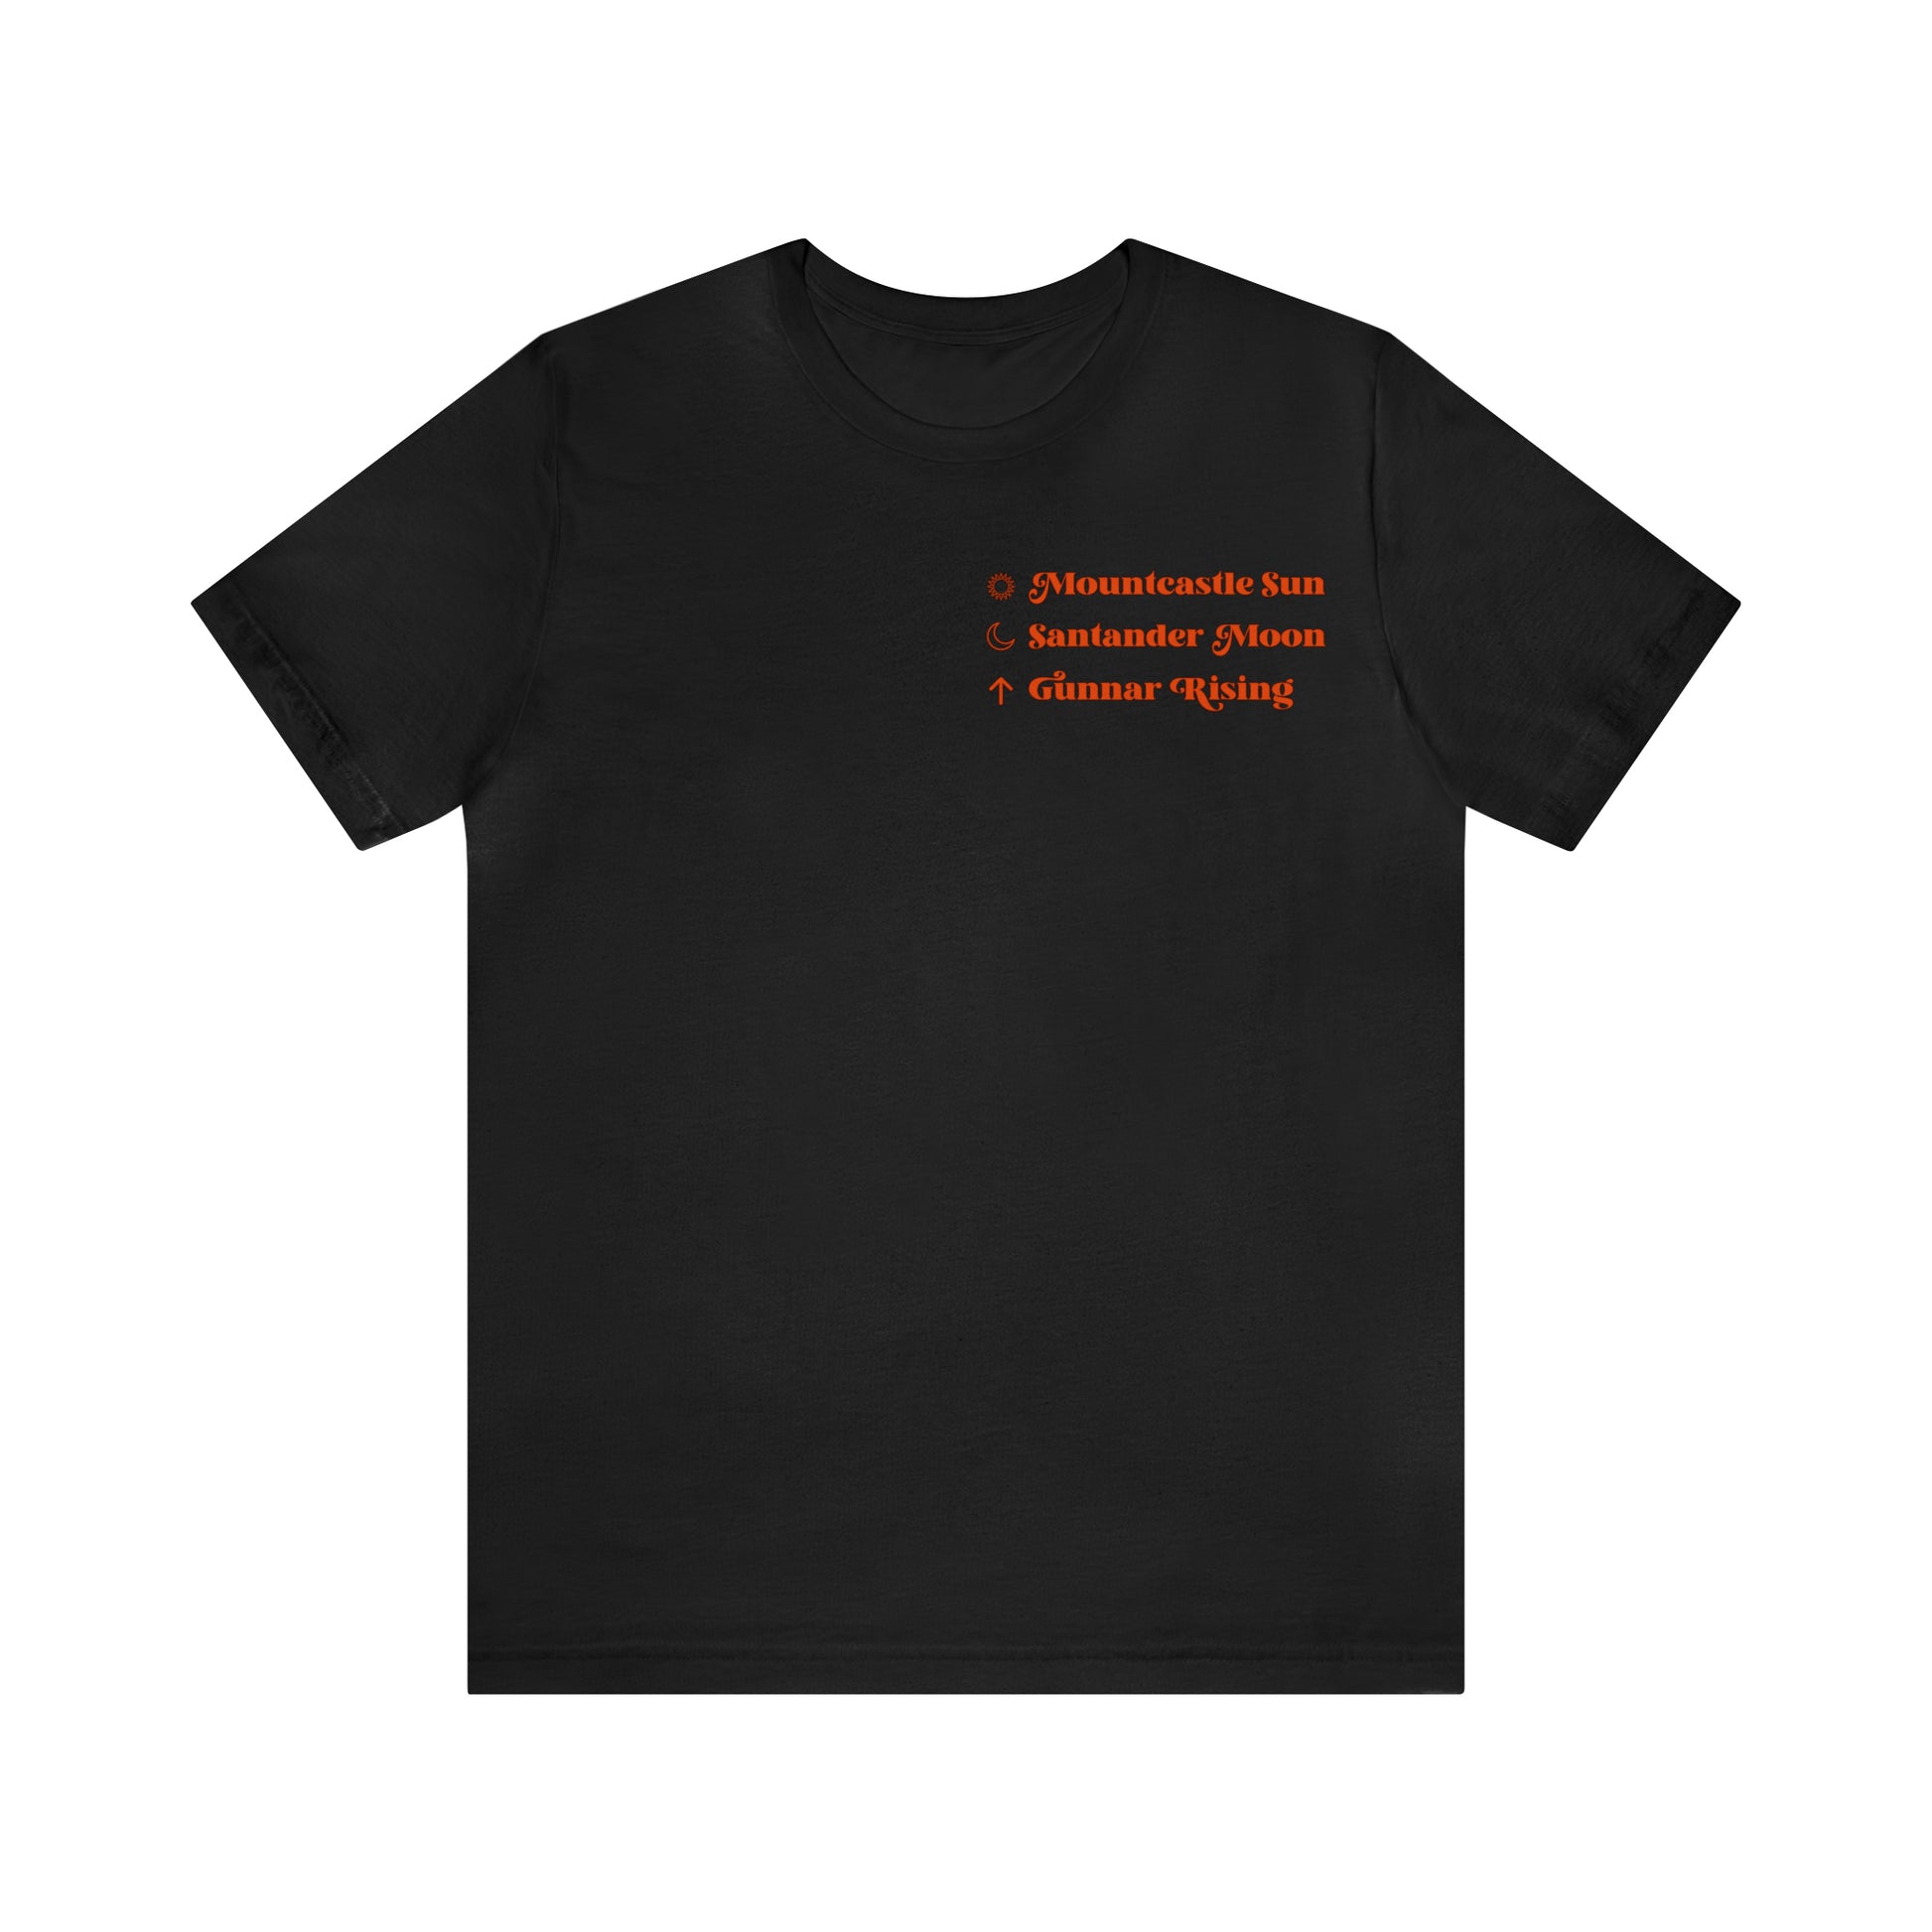 Baltimore Orioles Black T-Shirt - Unisex - 100% Cotton - S, M, L, XL